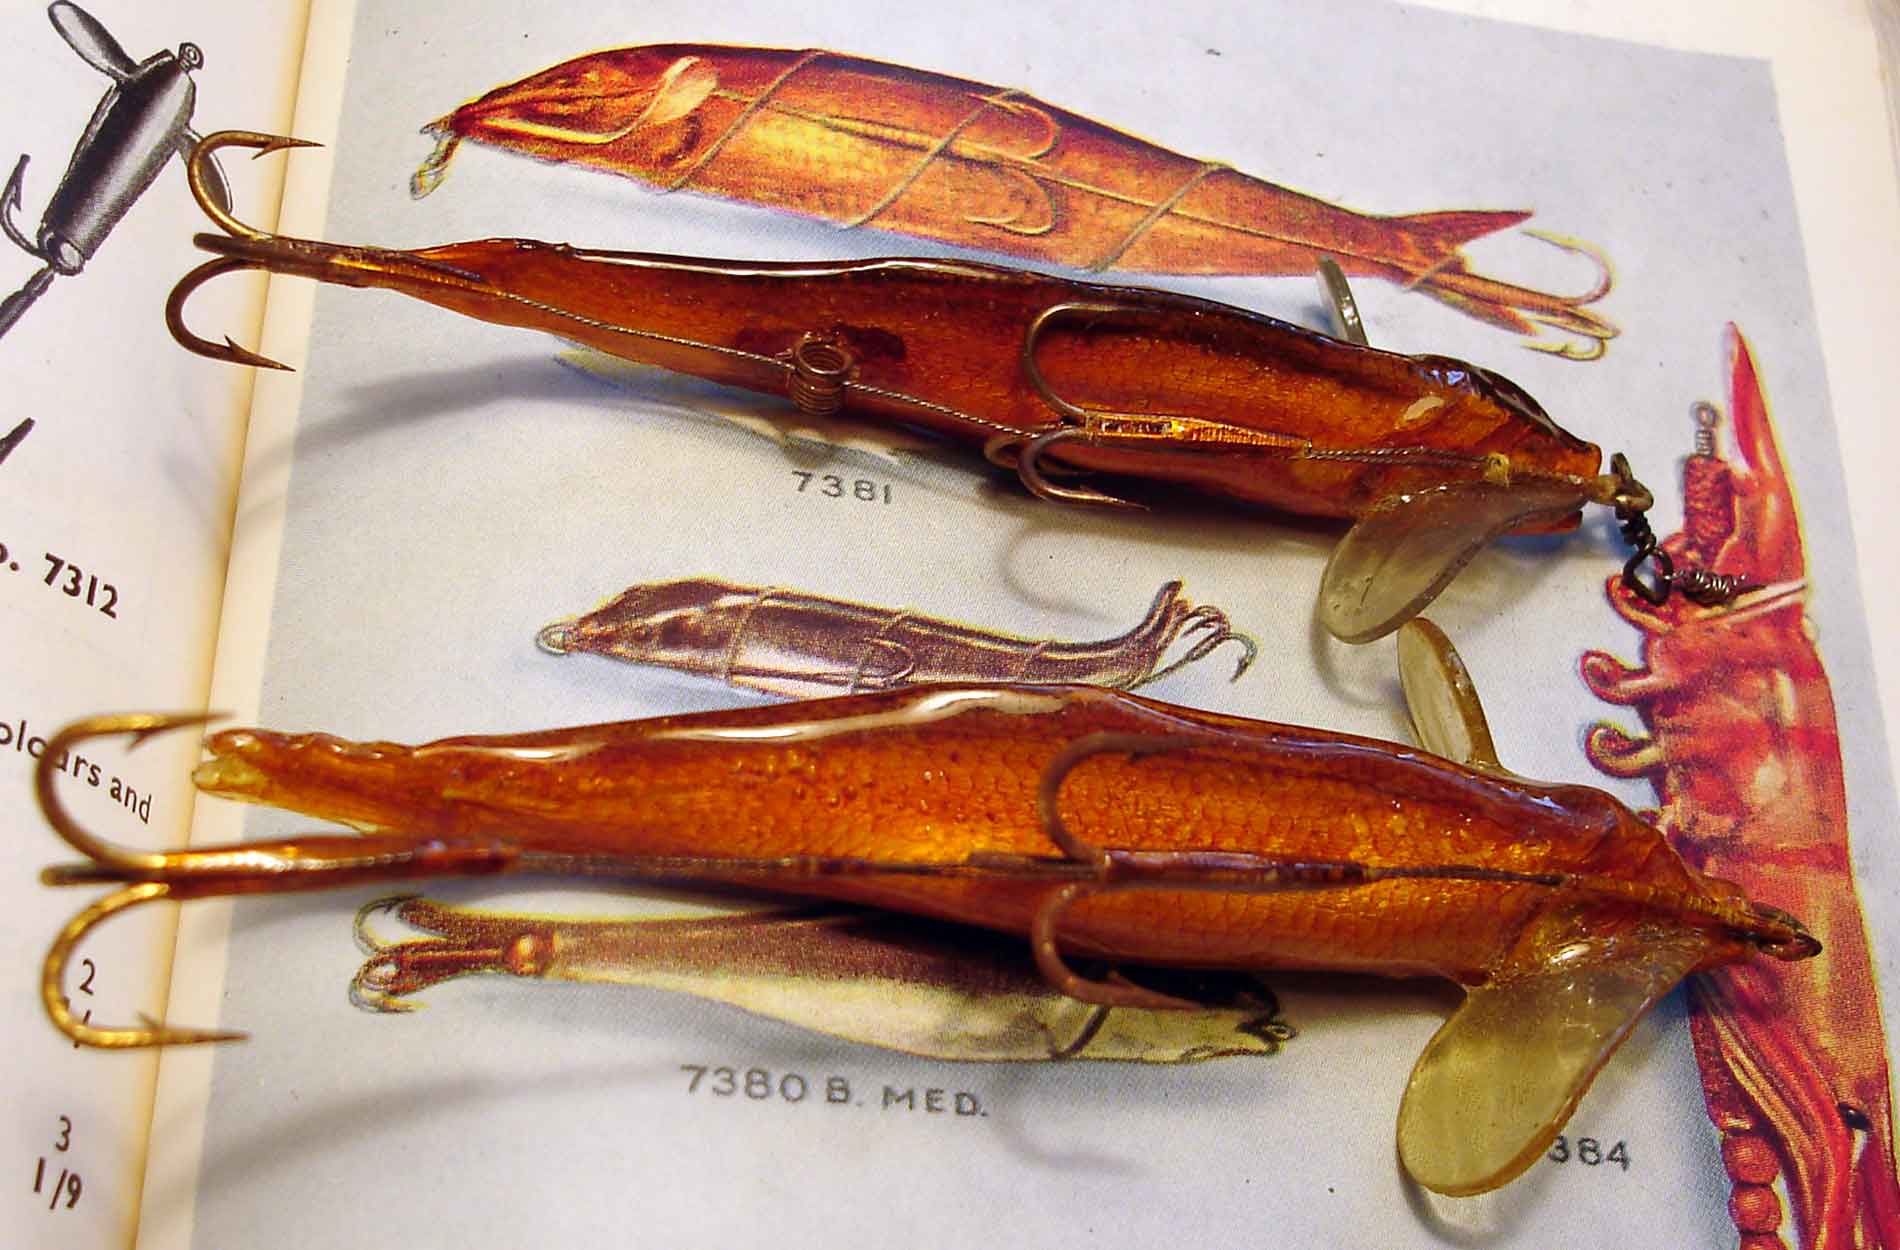 Konservierte Köderfische haben als "Kunstköder" eine lange Tradition. Hier Nevison Minnows von Allcock, die 1939 erstmals auf den Markt kamen.